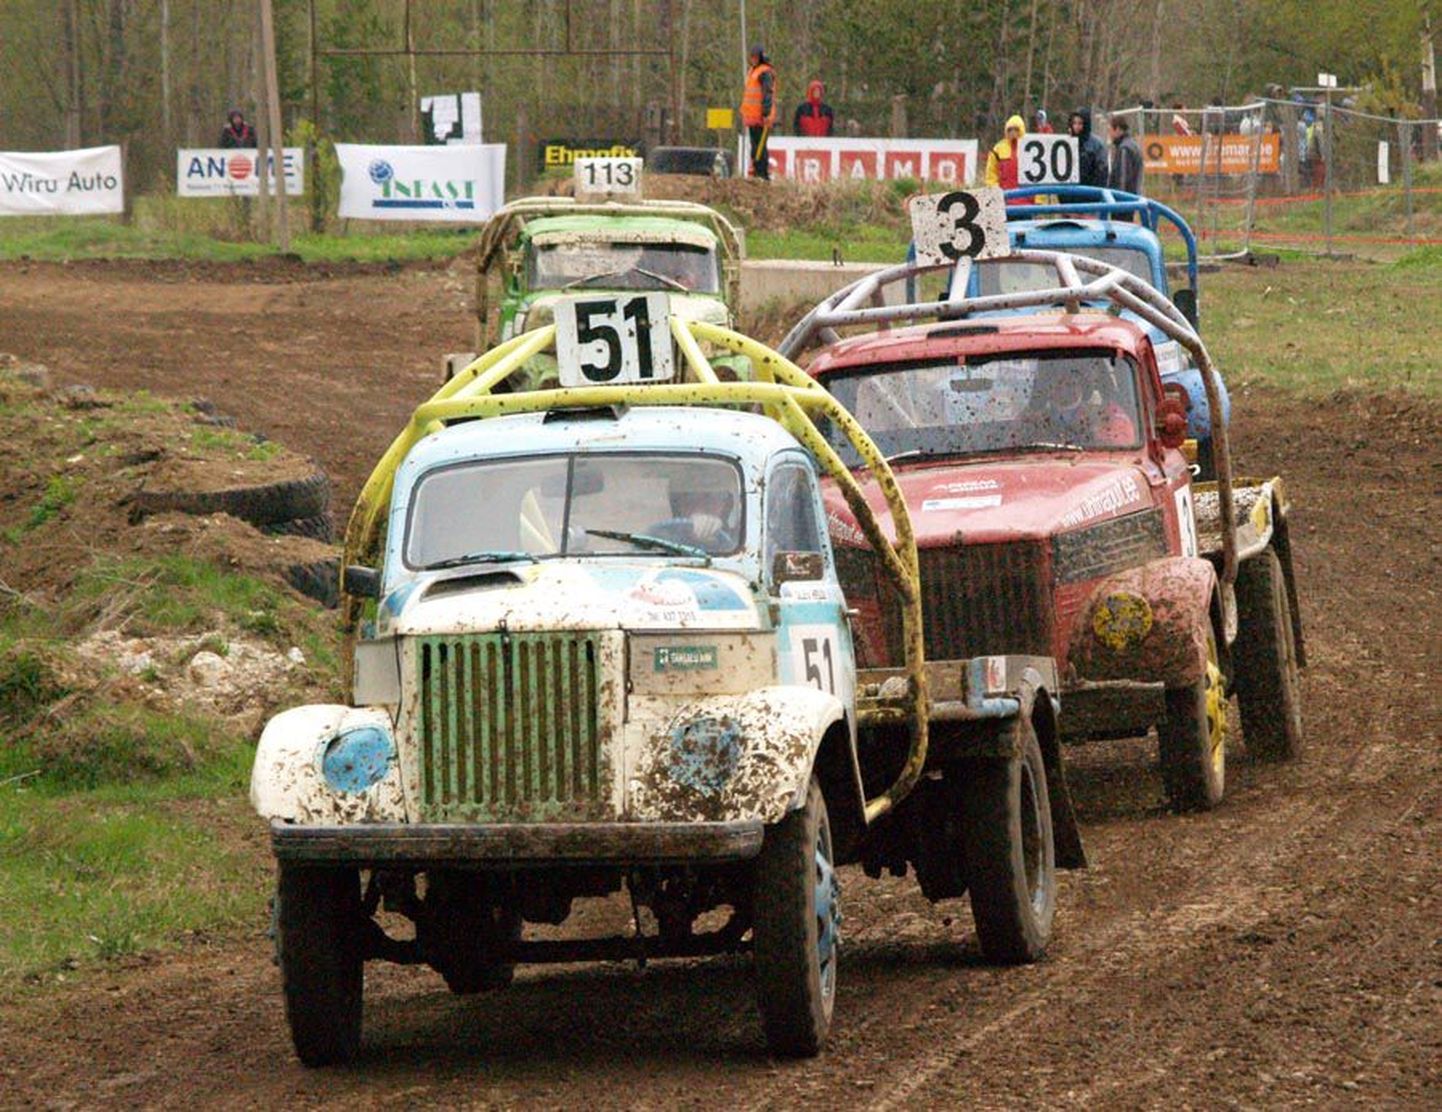 Võhma mees Olev Helü (auto nr. 51) alustas hooaega veoautokrossi meistrivõistluste avaetapi võiduga Lääne-Virumaal.